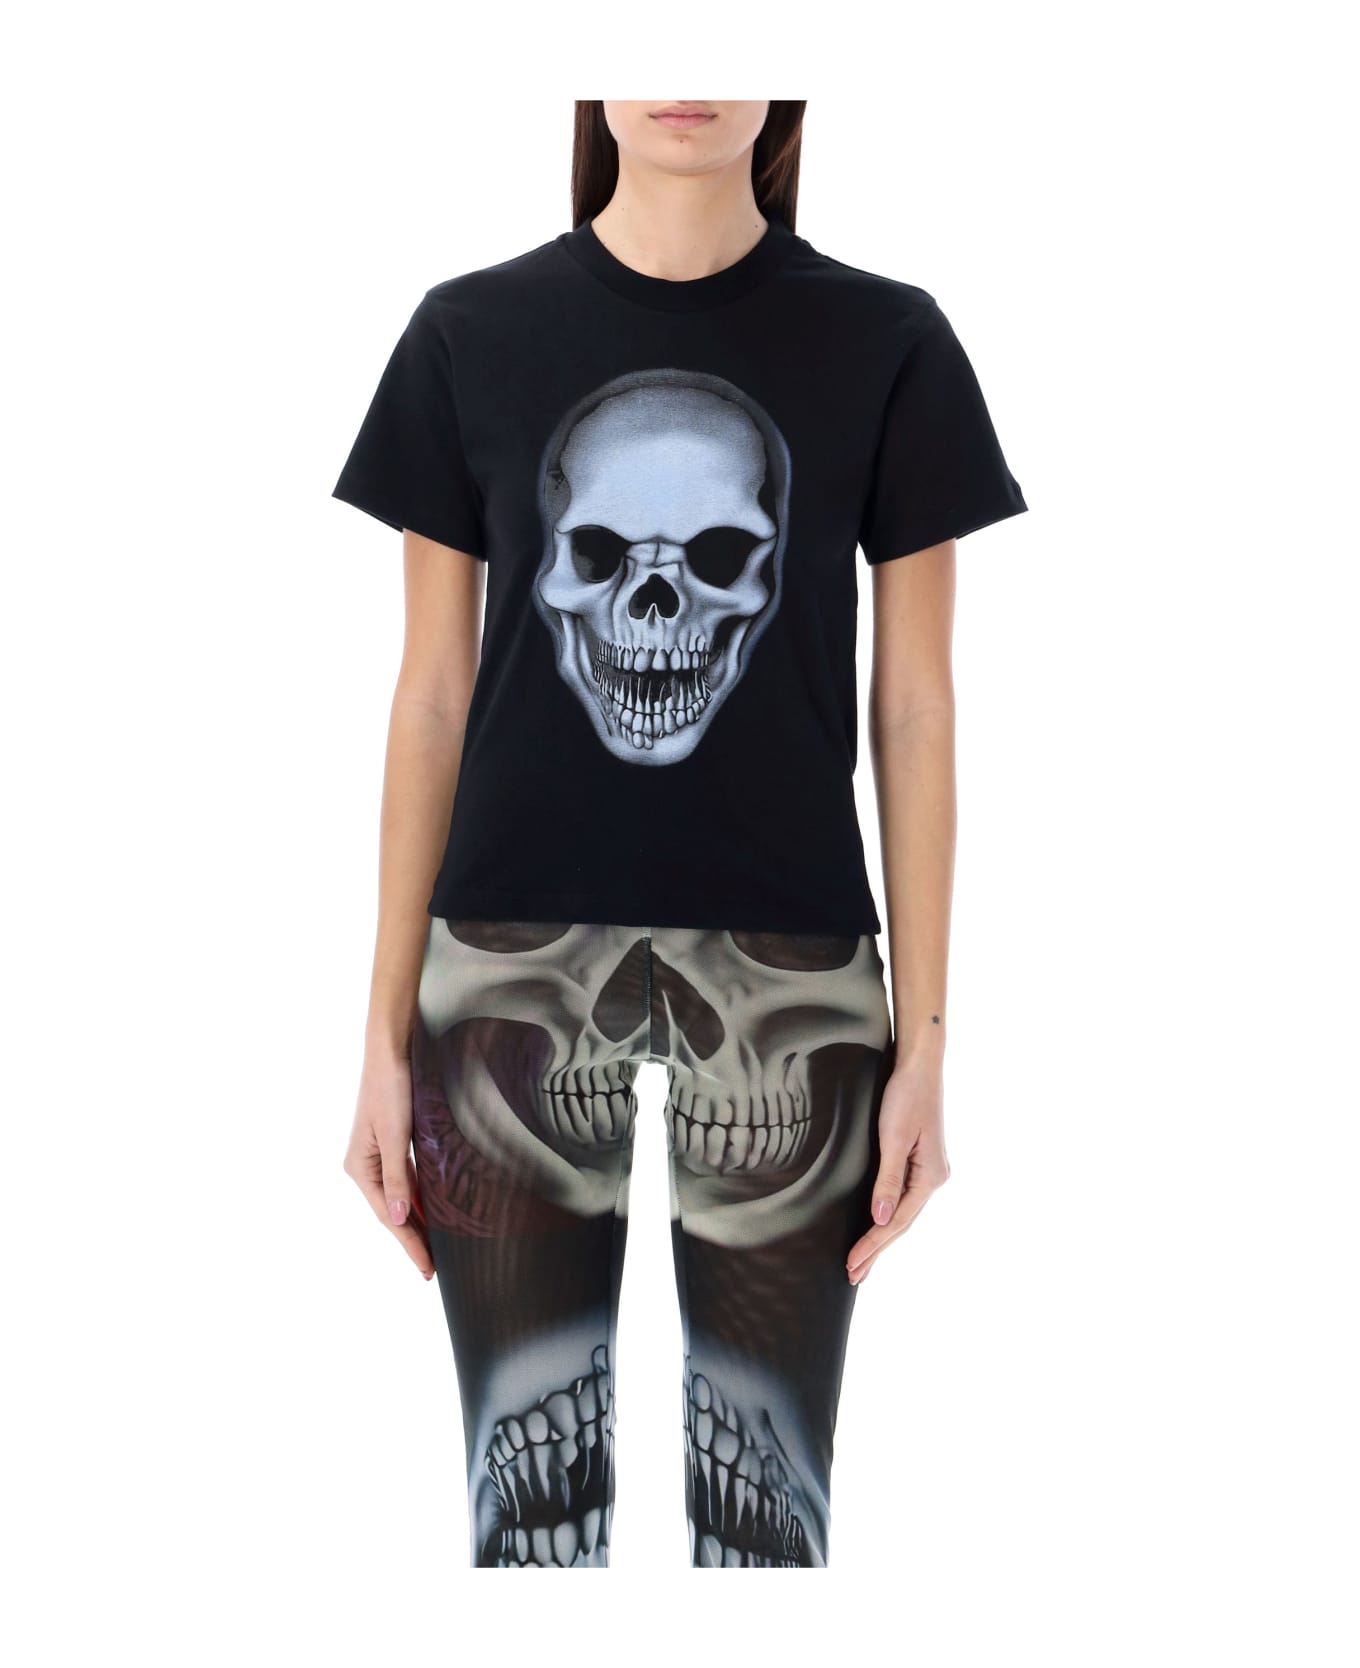 Ottolinger Skull T-shirt - BLACK